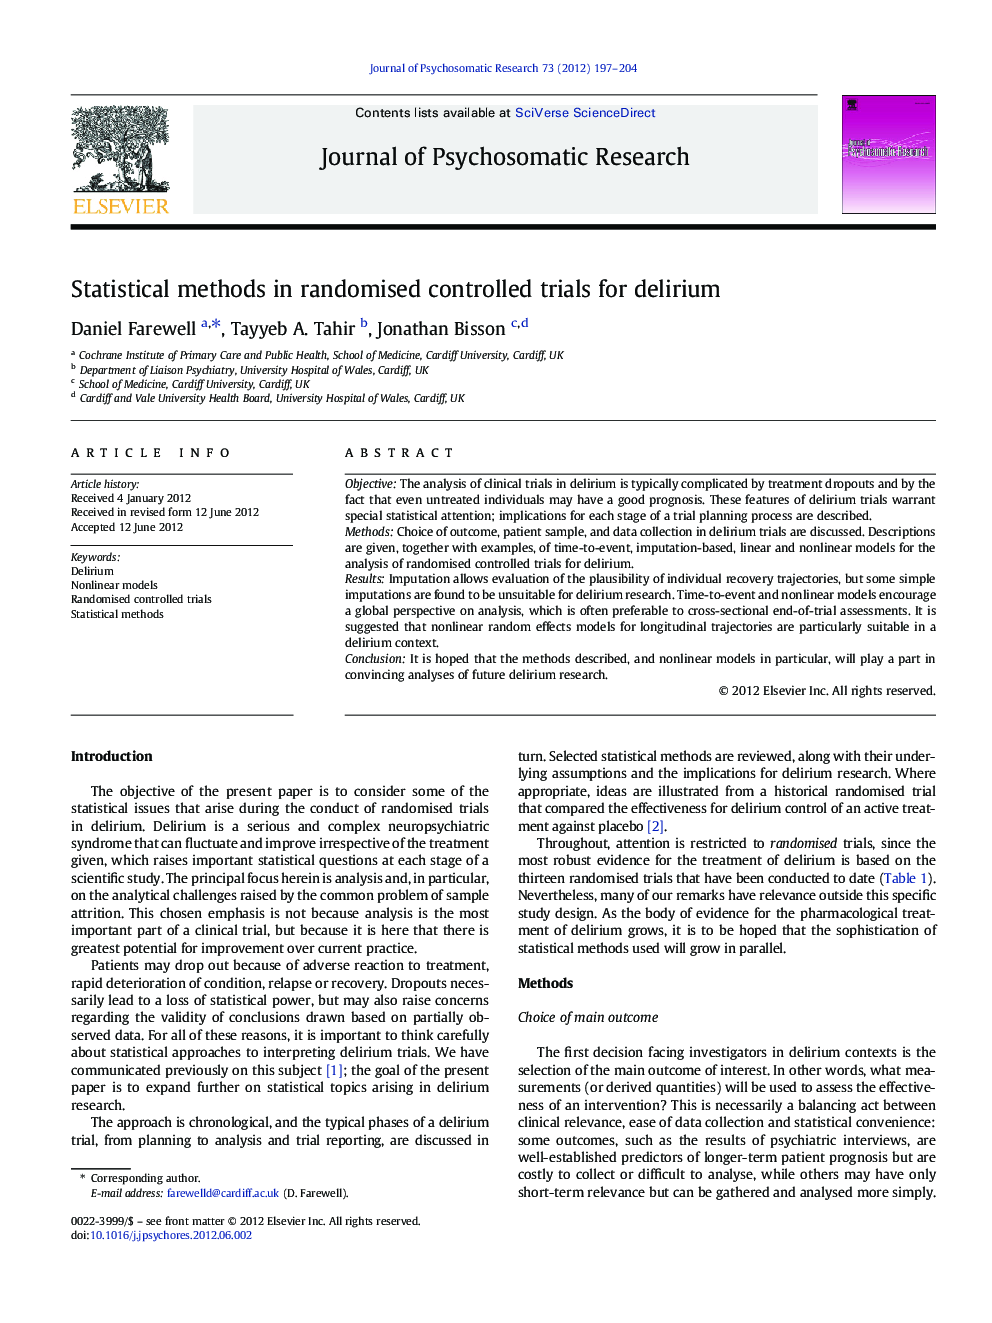 Statistical methods in randomised controlled trials for delirium